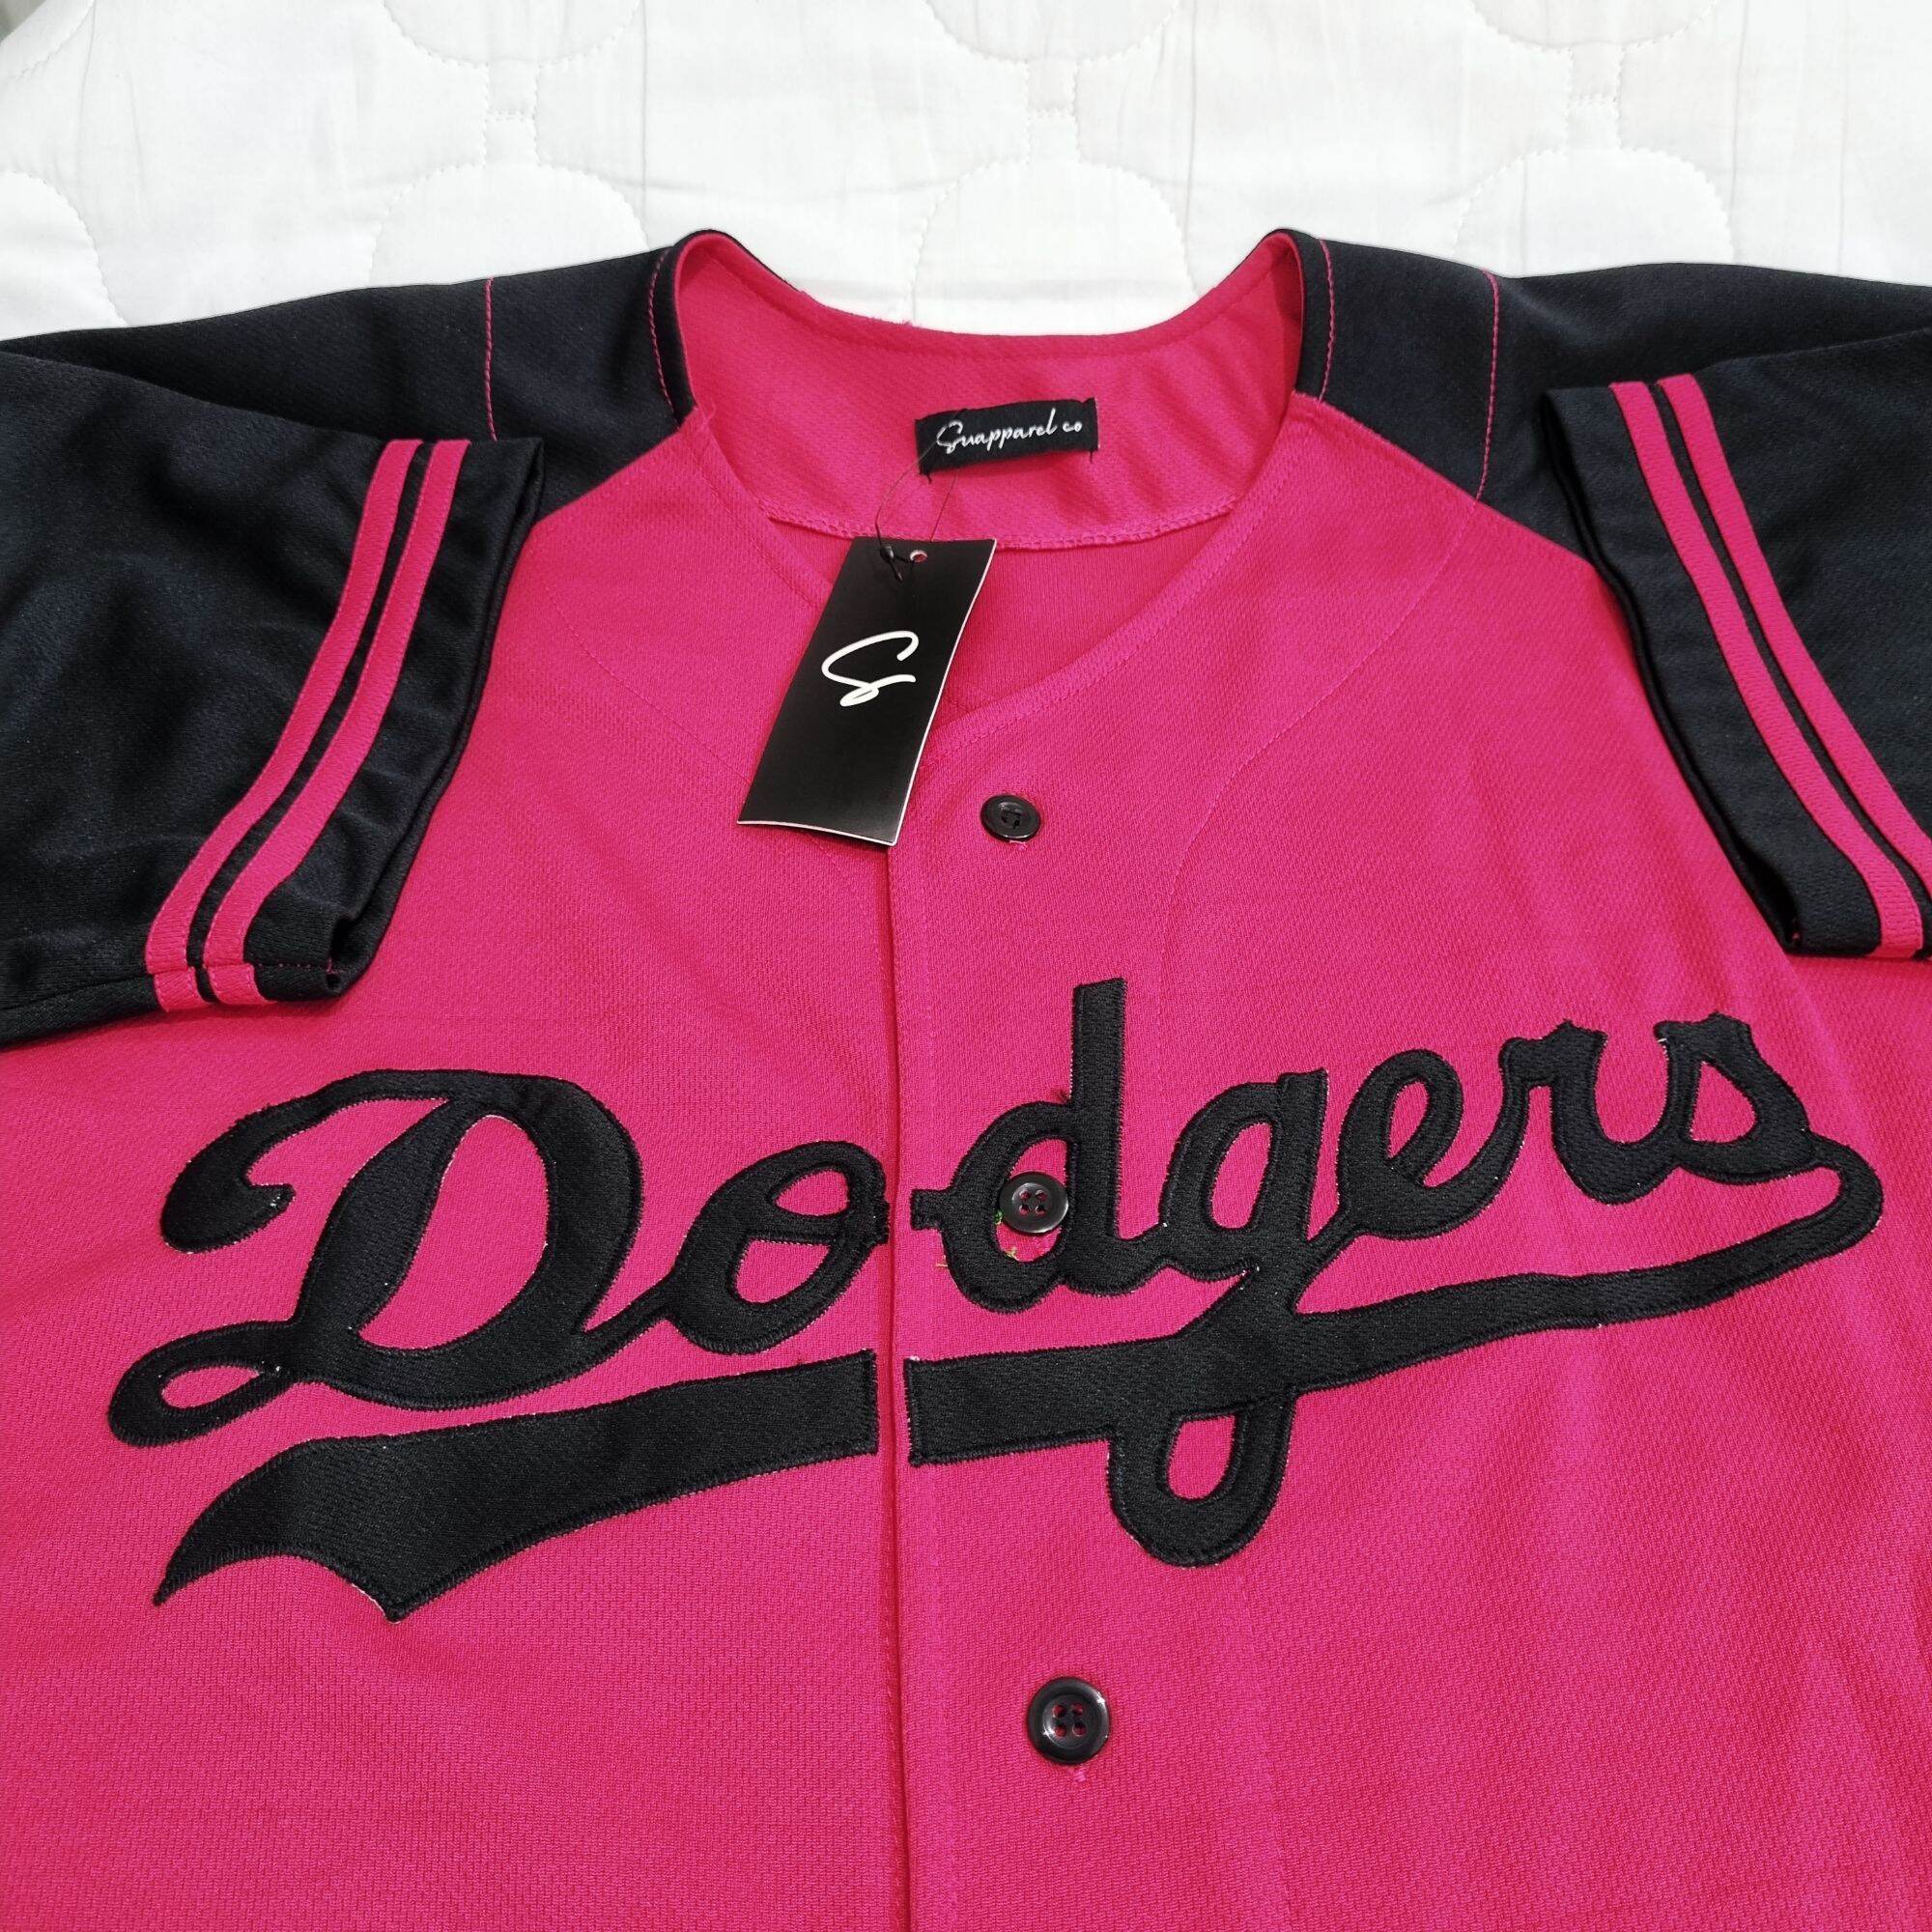 Baju Sport Jersey Baseball dodgers Pink lengan hitam Pria Wanita